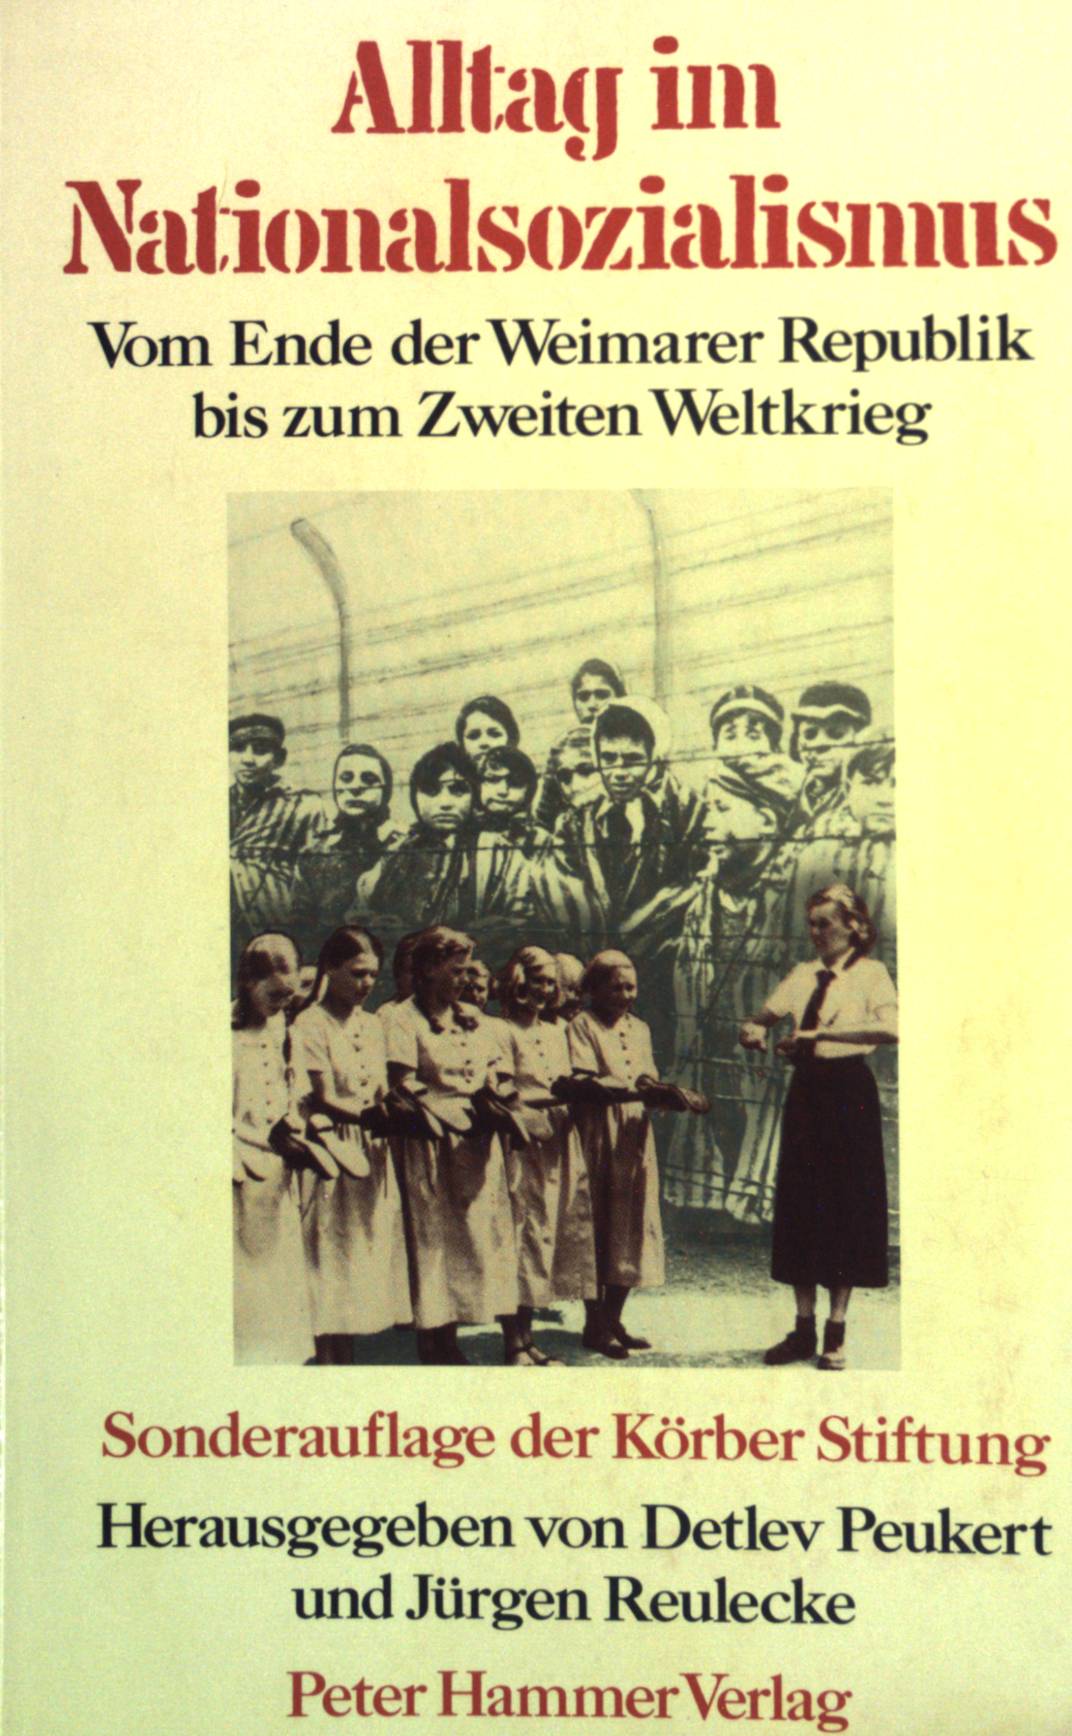 Altag im Nationalsozialismus: Vom Ende der Weimarer Republik bis zum Zweiten Weltkrieg. - Peukert, Detlev und Jürgen (Hrsg.) Reulecke